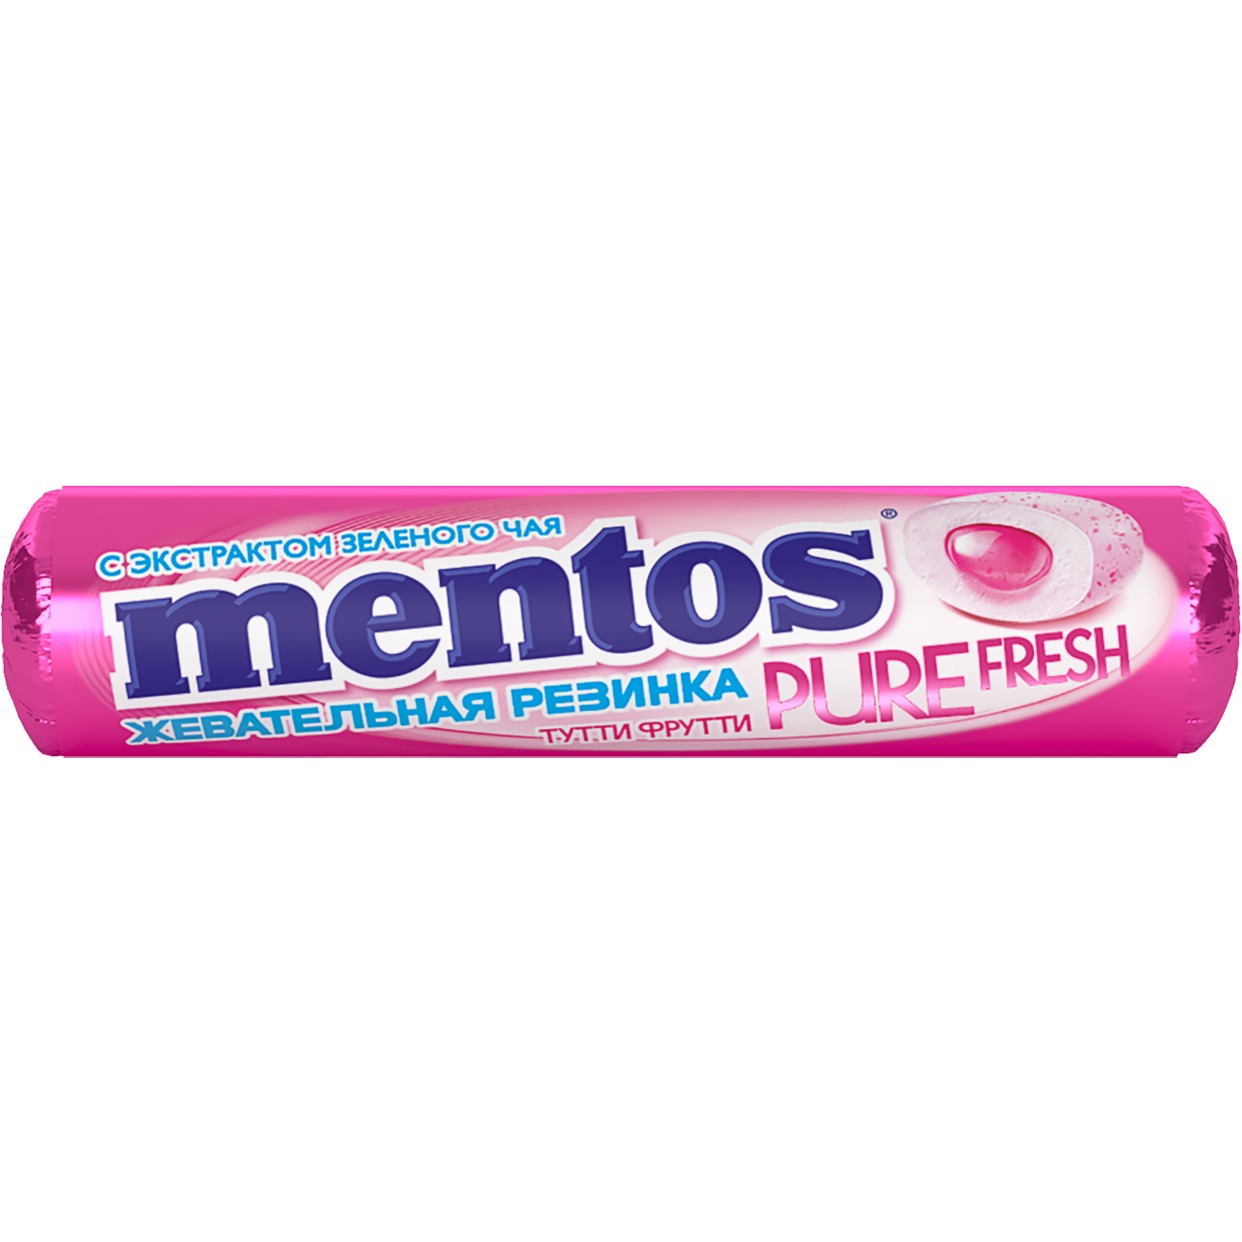 Жевательная резинка "Ментос"со вкусом тутти-фрутти 15,5 г по акции в Пятерочке